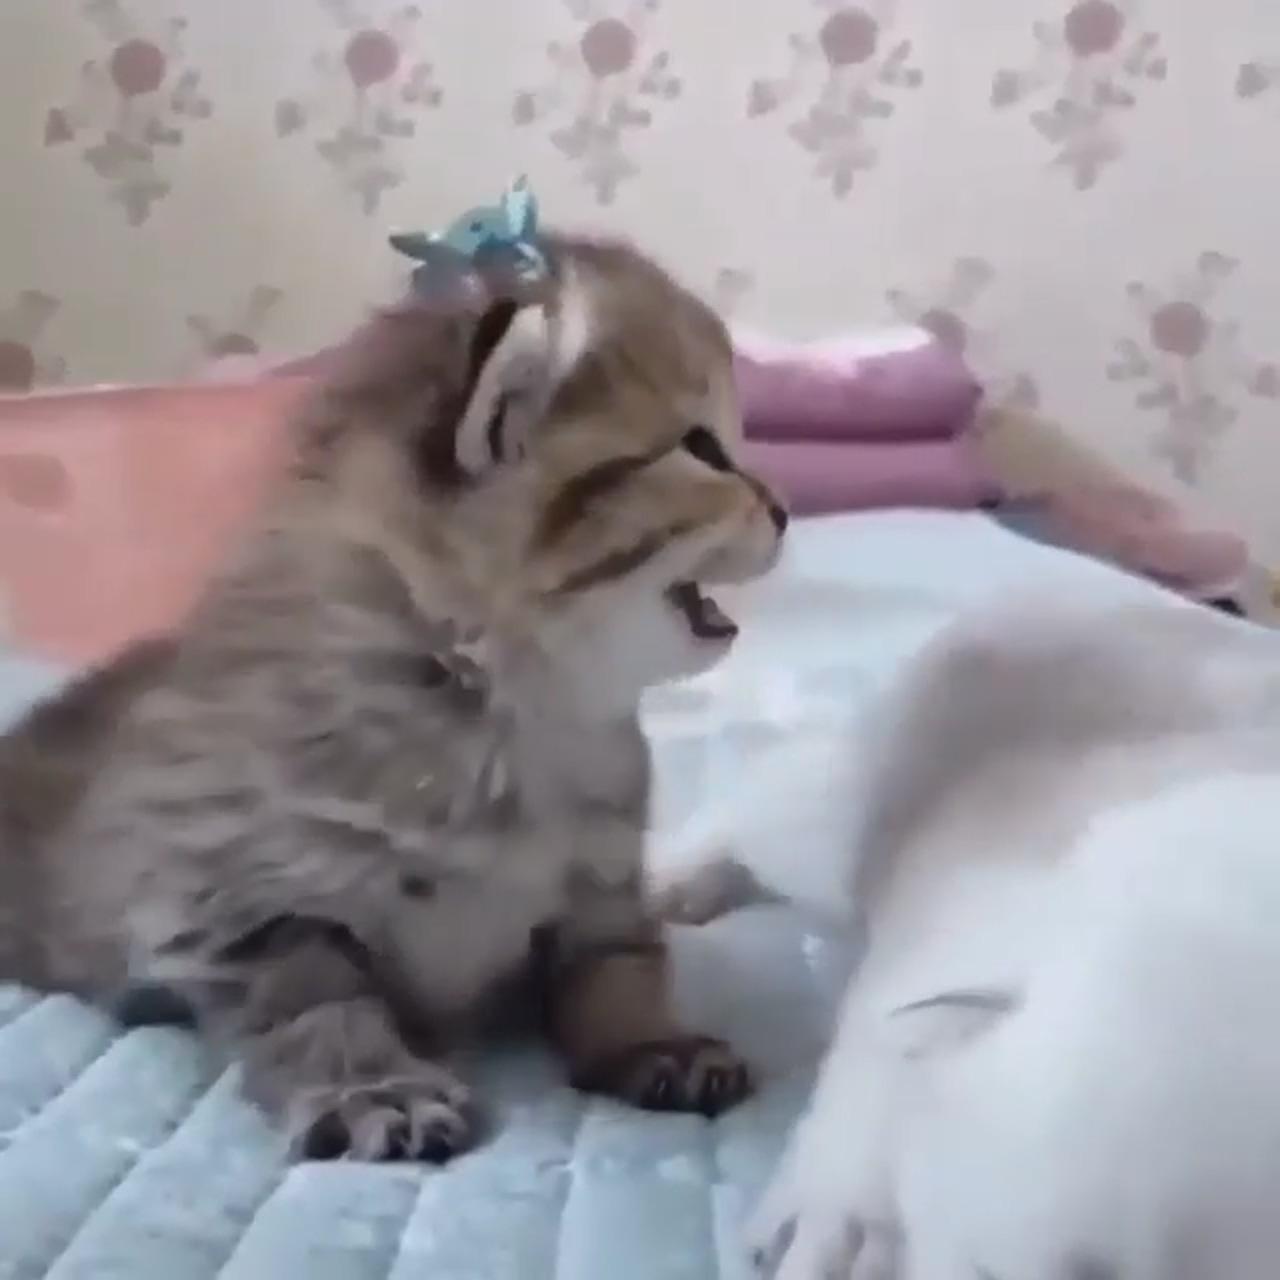 Cute baby bunnies; cute little kittens